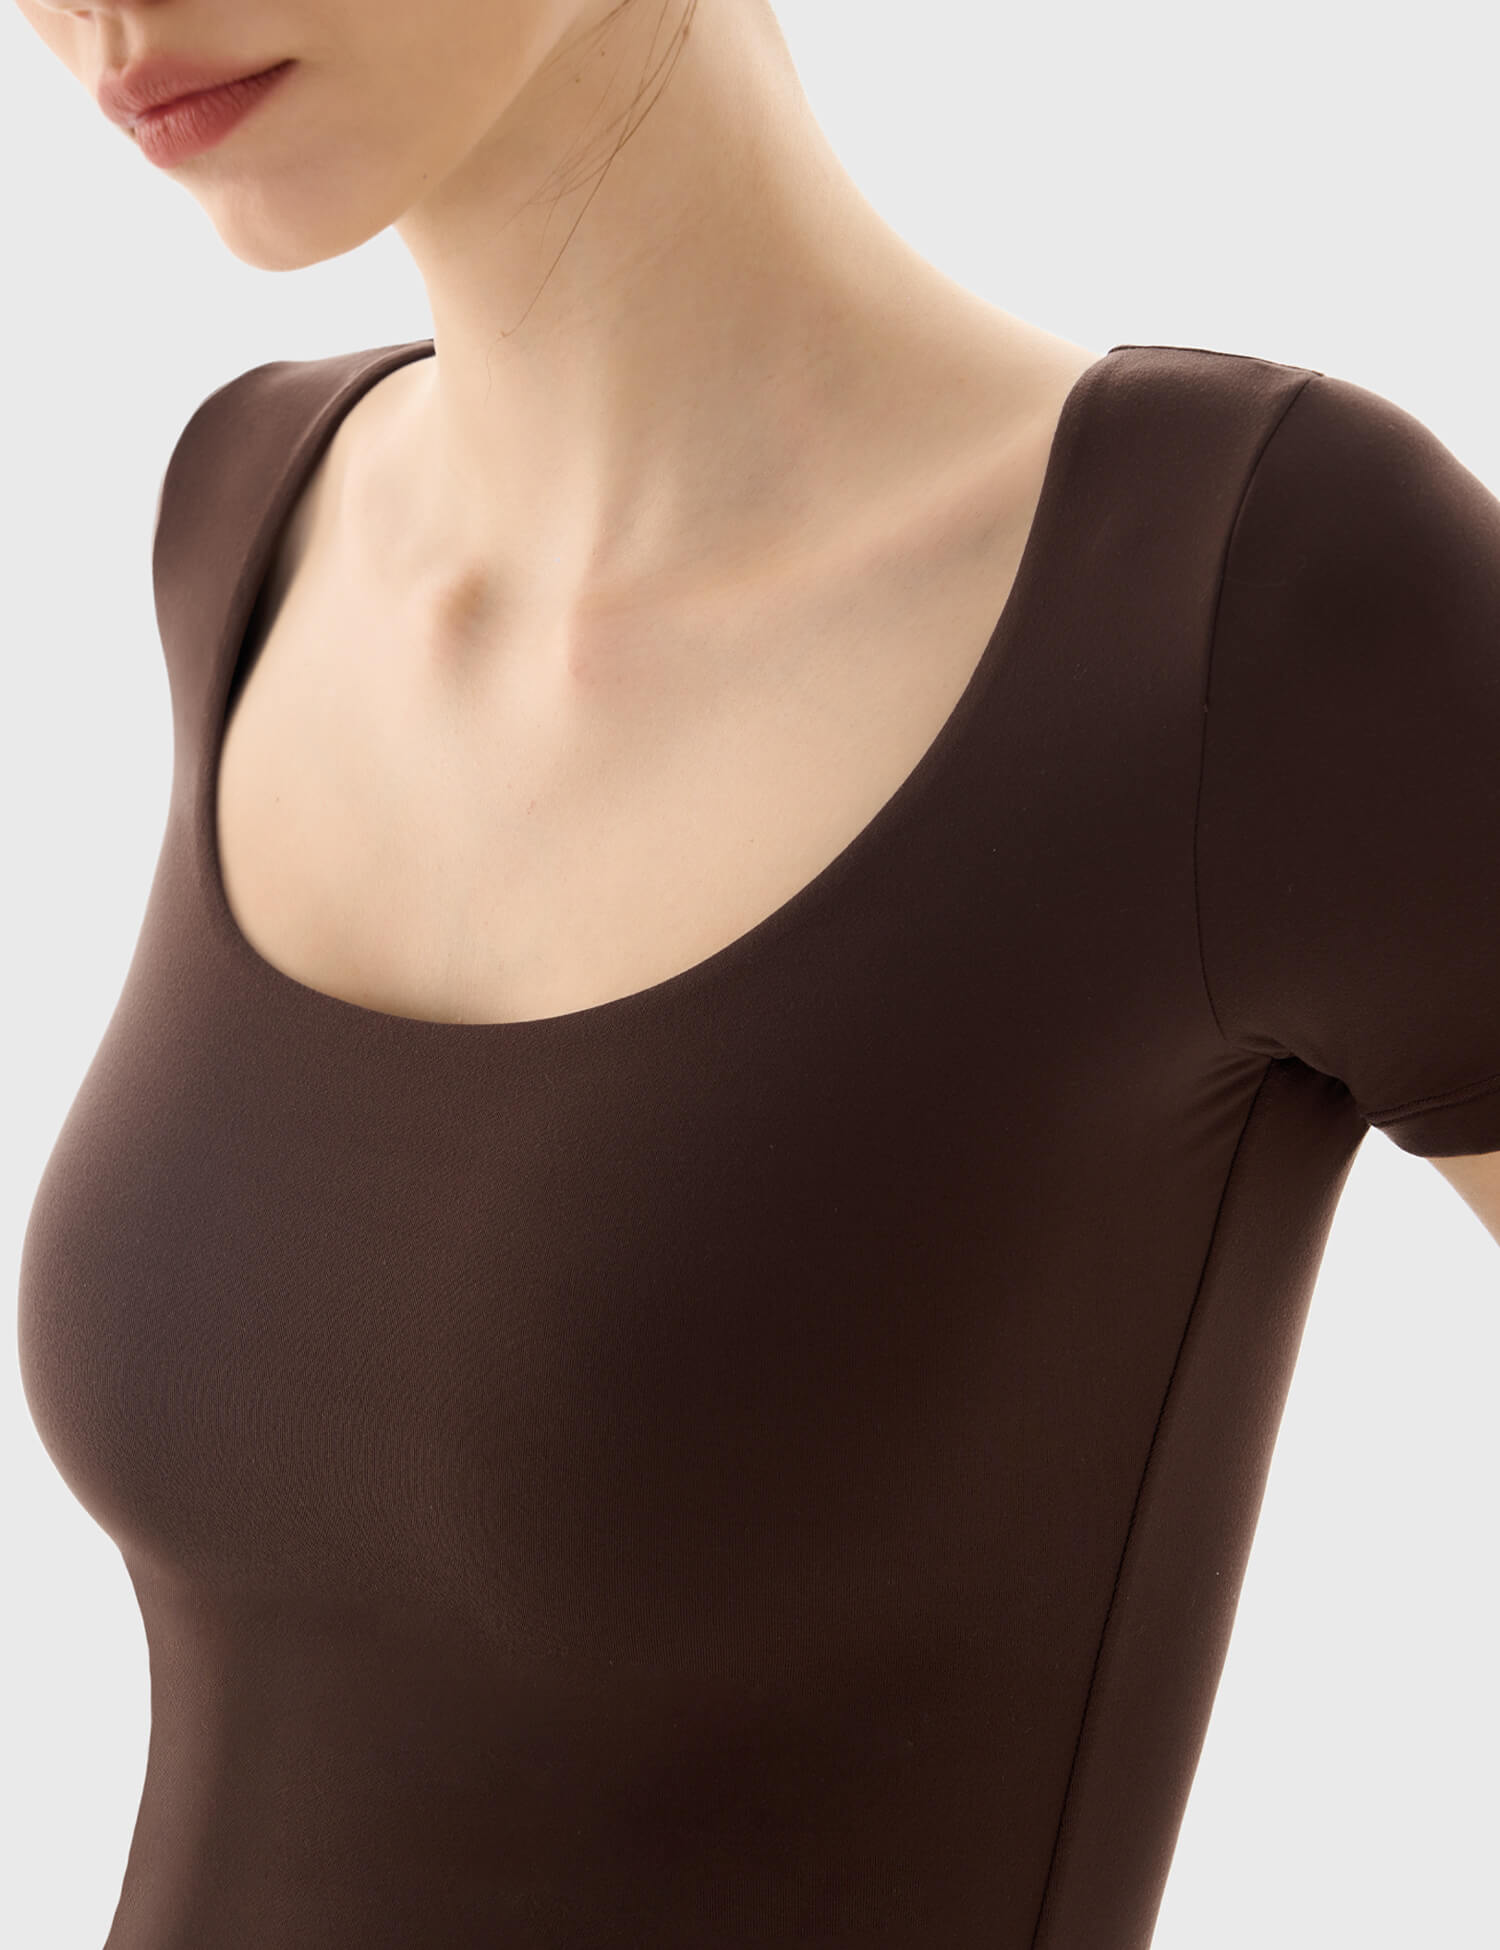 $7/mo - Finance PUMIEY Women's Scoop Neck Long Sleeve Bodysuit